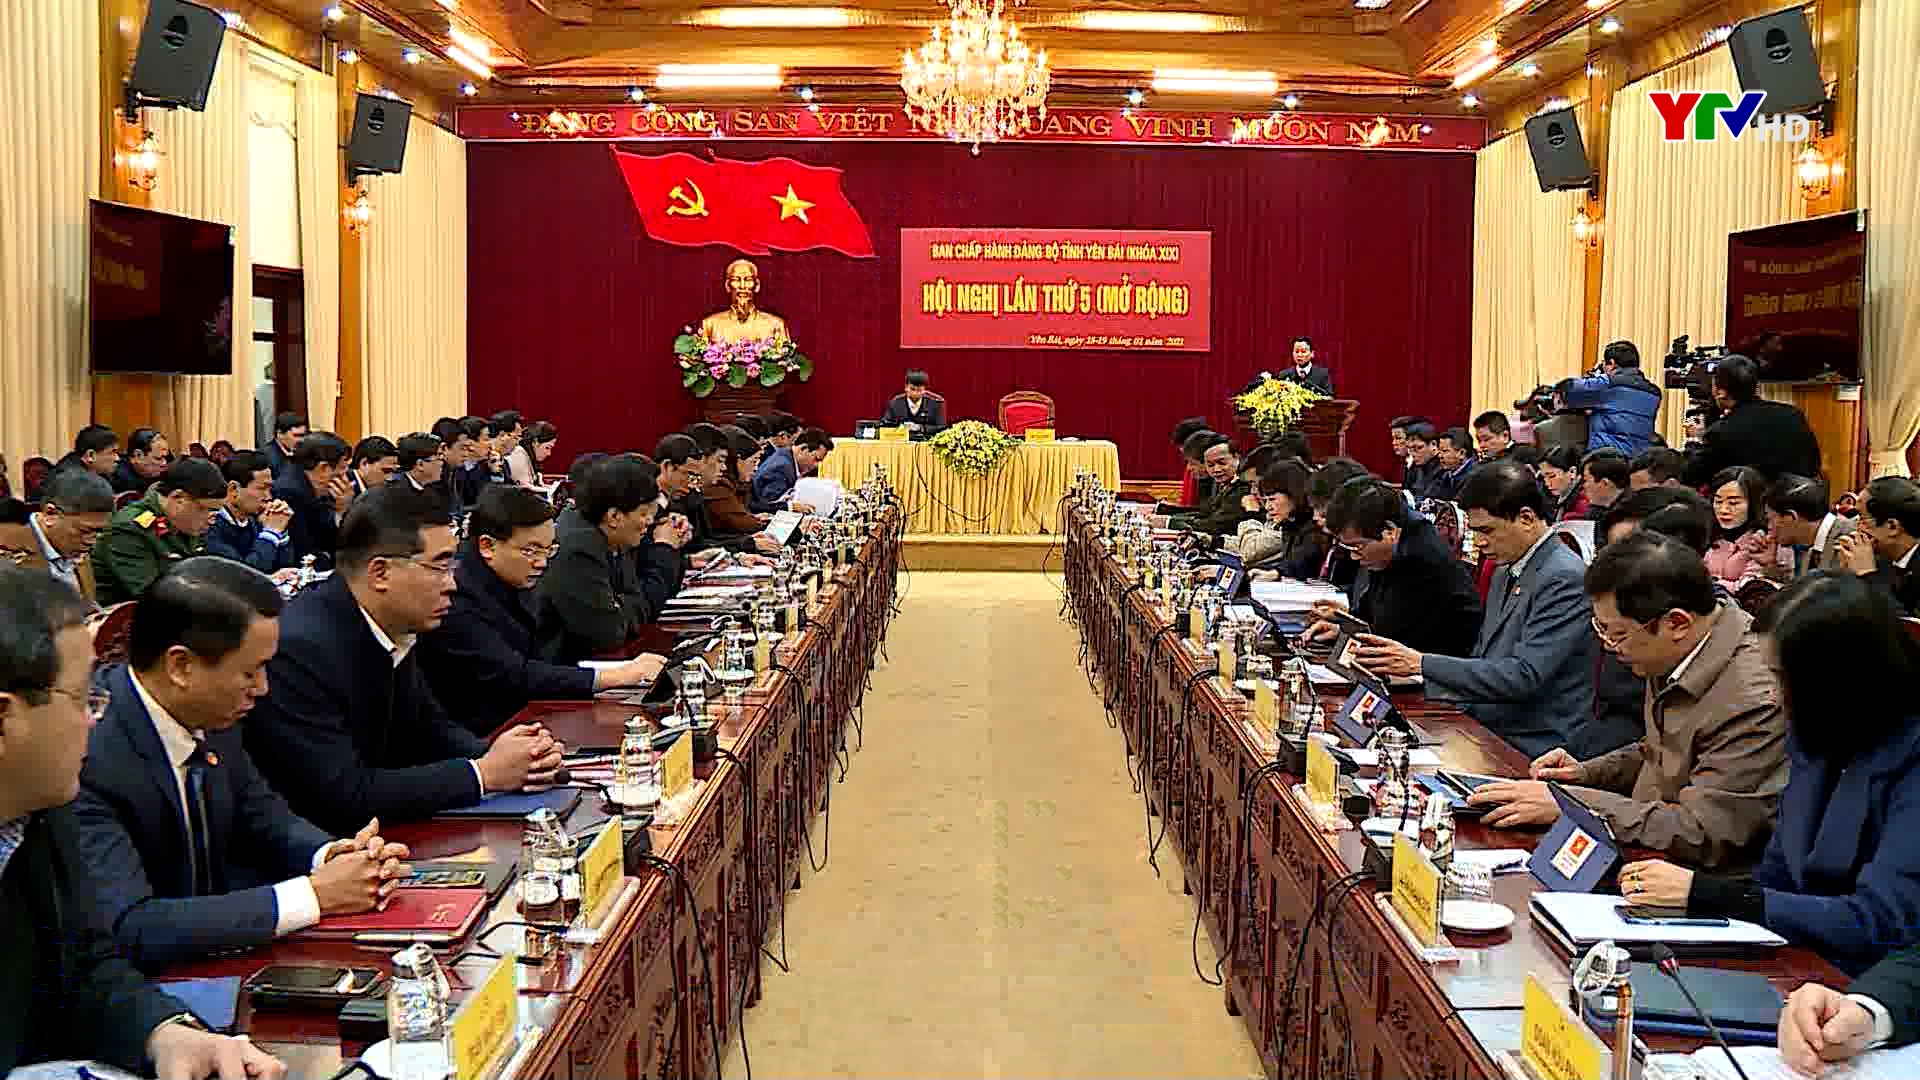 Khai mạc Hội nghị Ban Chấp hành Đảng bộ tỉnh Yên Bái lần thứ 5 ( mở rộng)